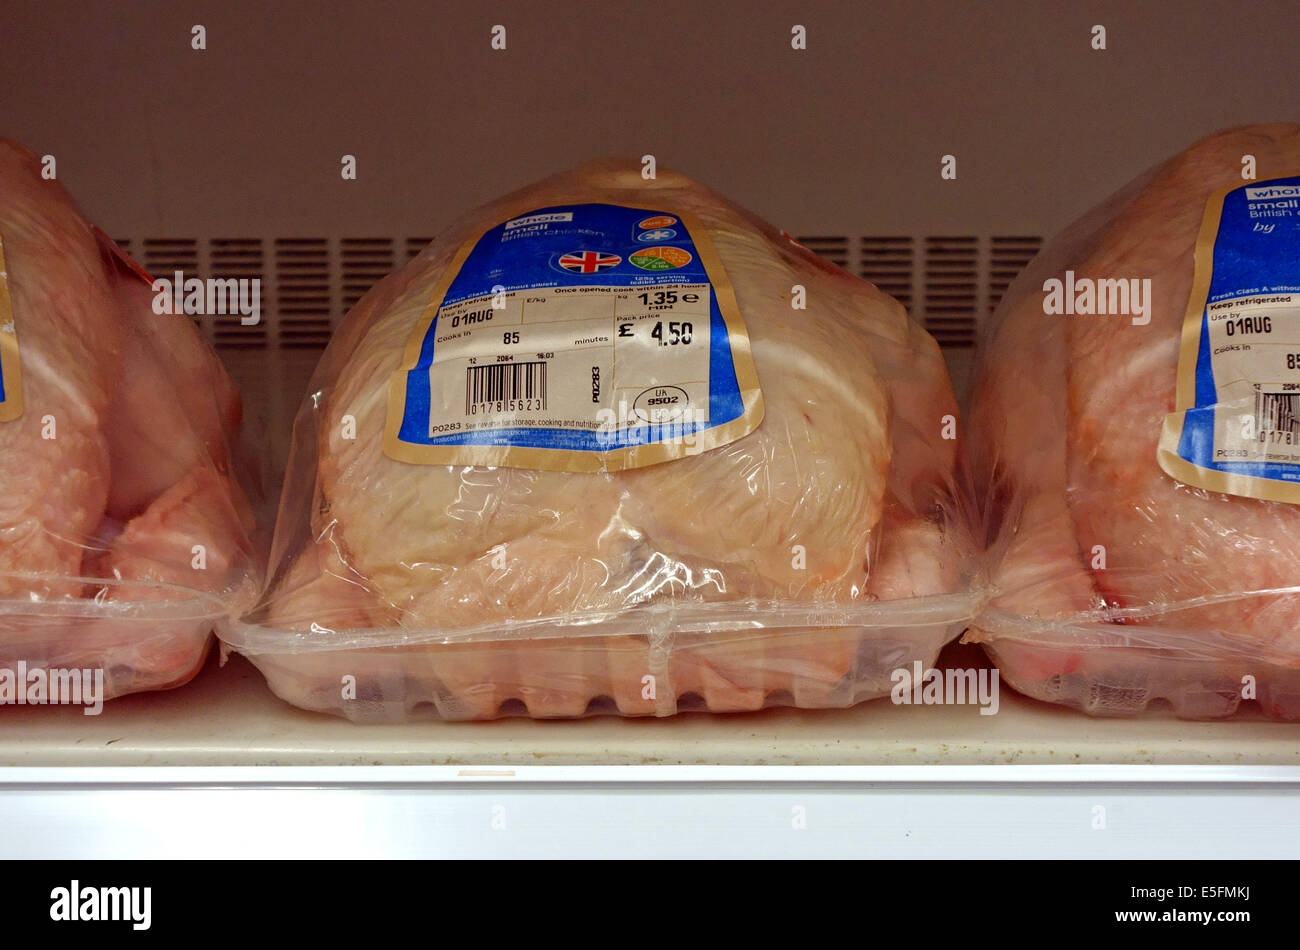 Briten produziert Huhn in London Supermarkt angezeigt Stockfoto